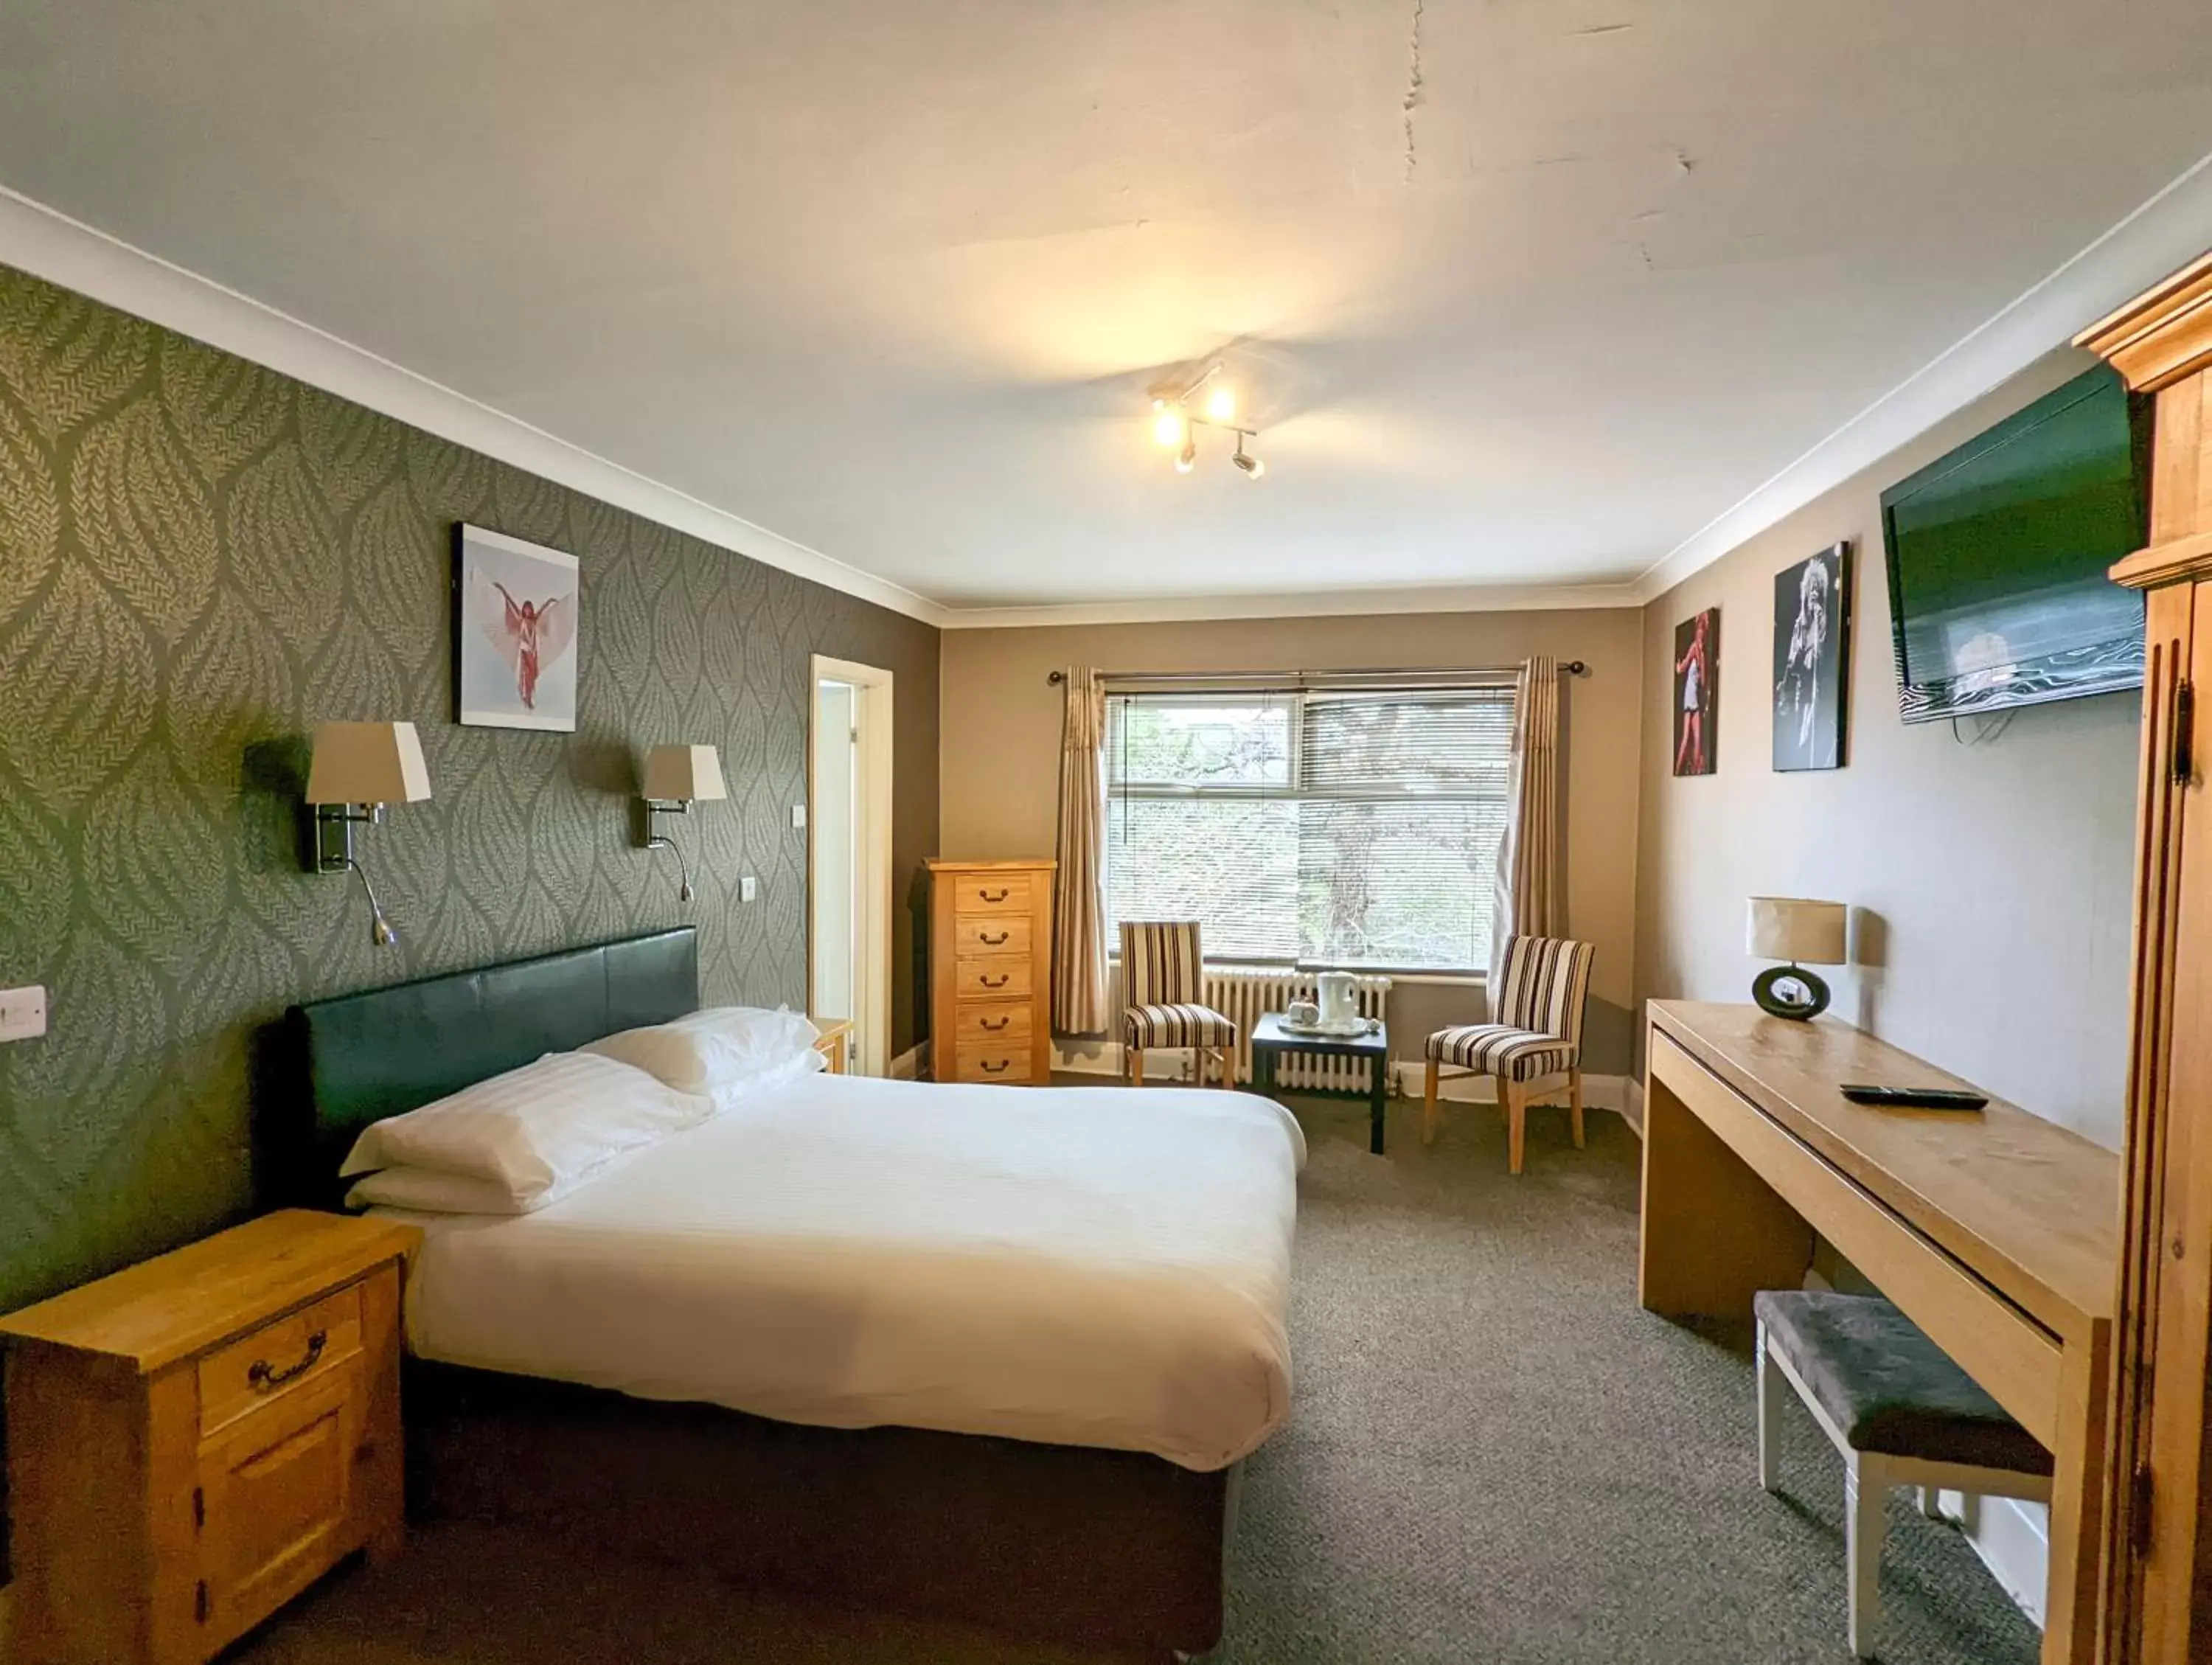 Bedroom in Hotel Celebrity